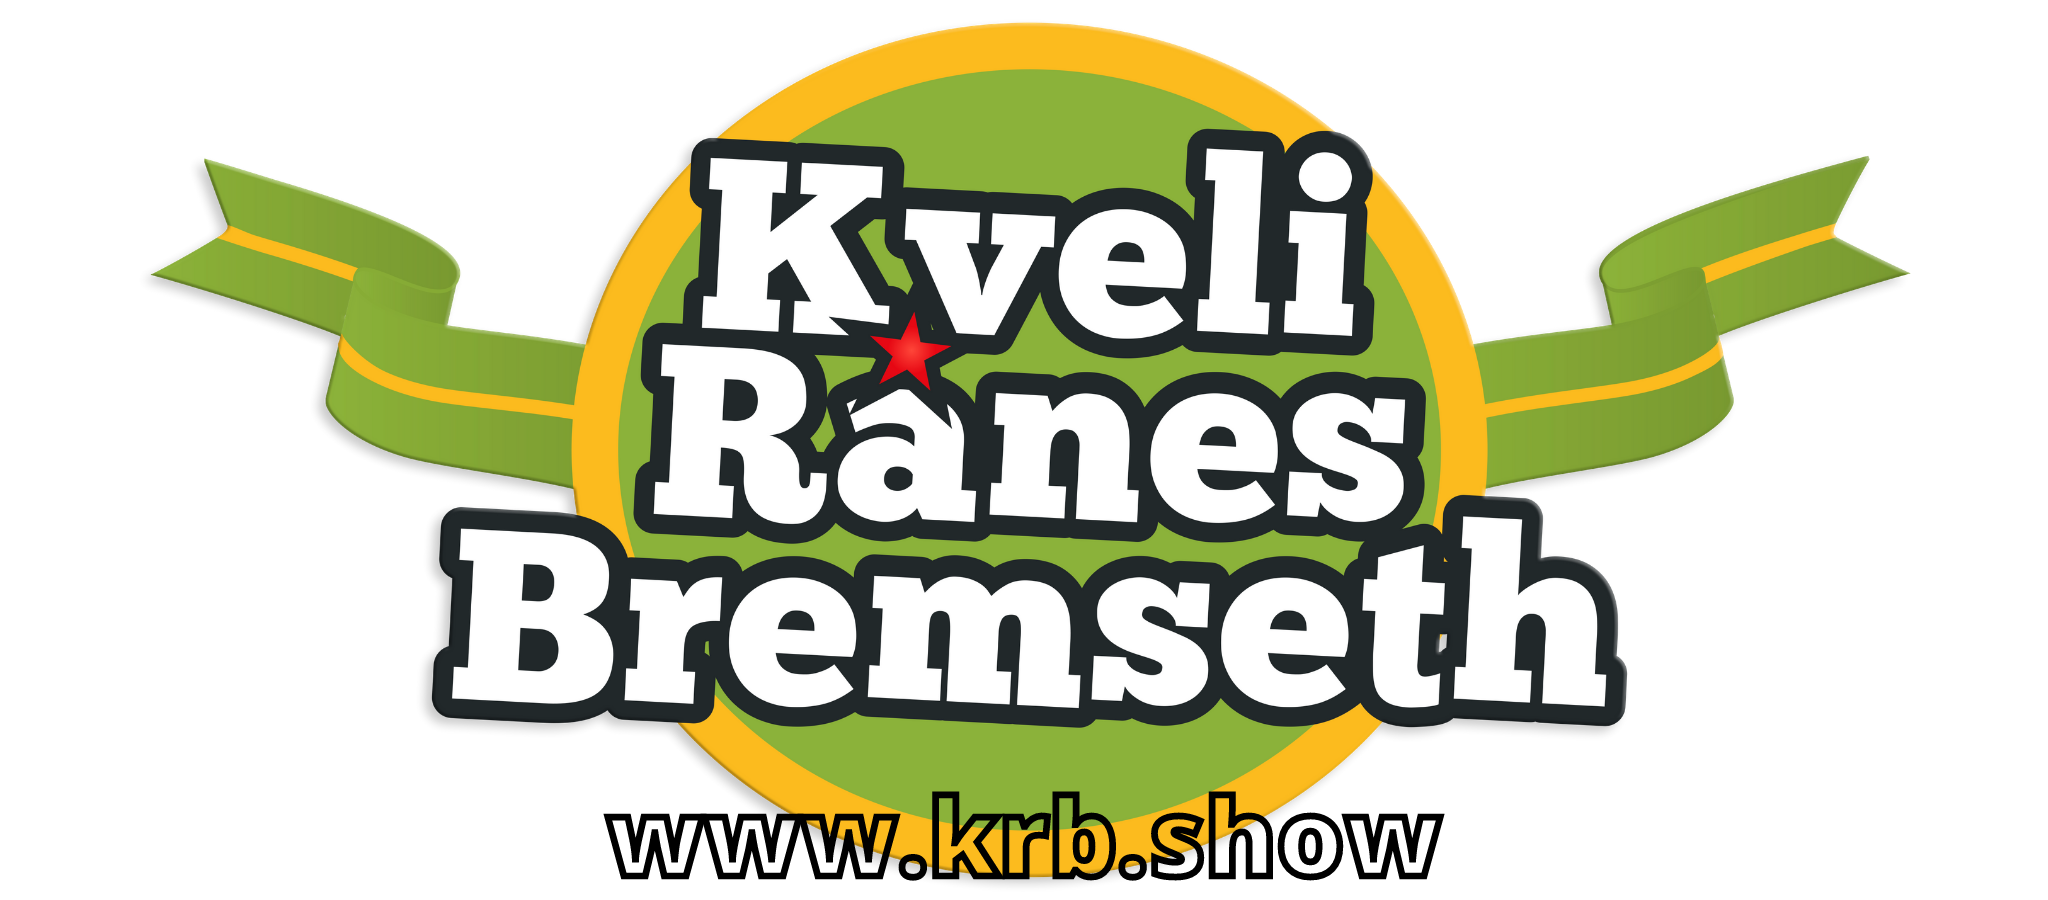 kveli-ranes-bremseth-nettbutikk.myshopify.com